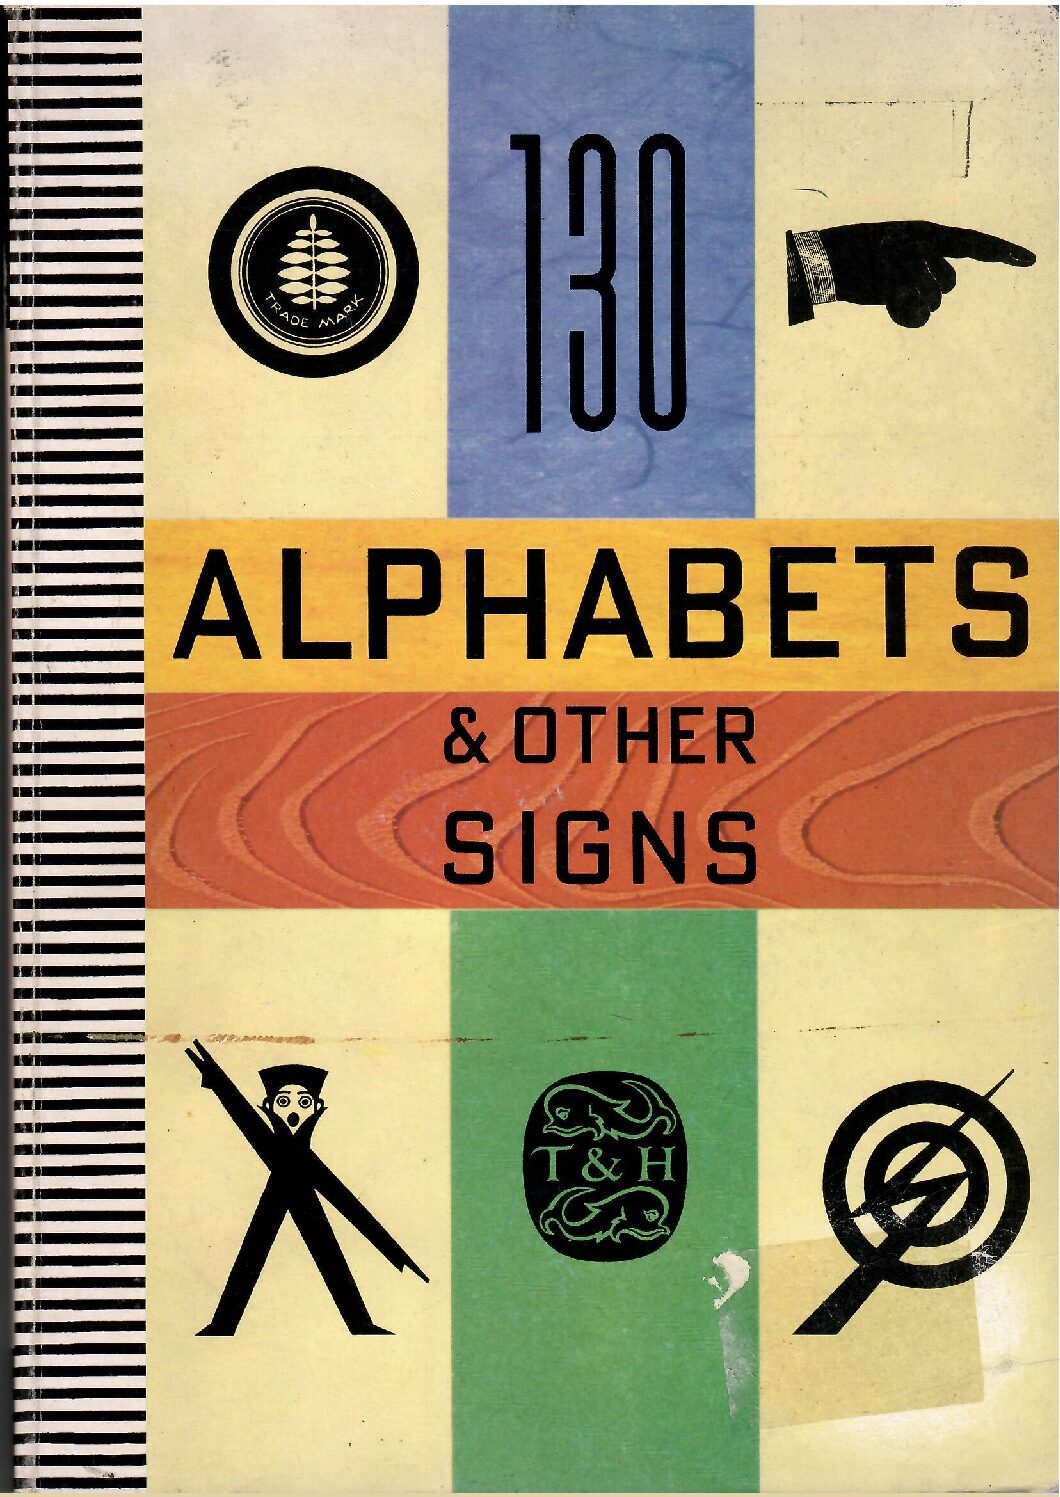 Copertina libro Alphabets e Other signs